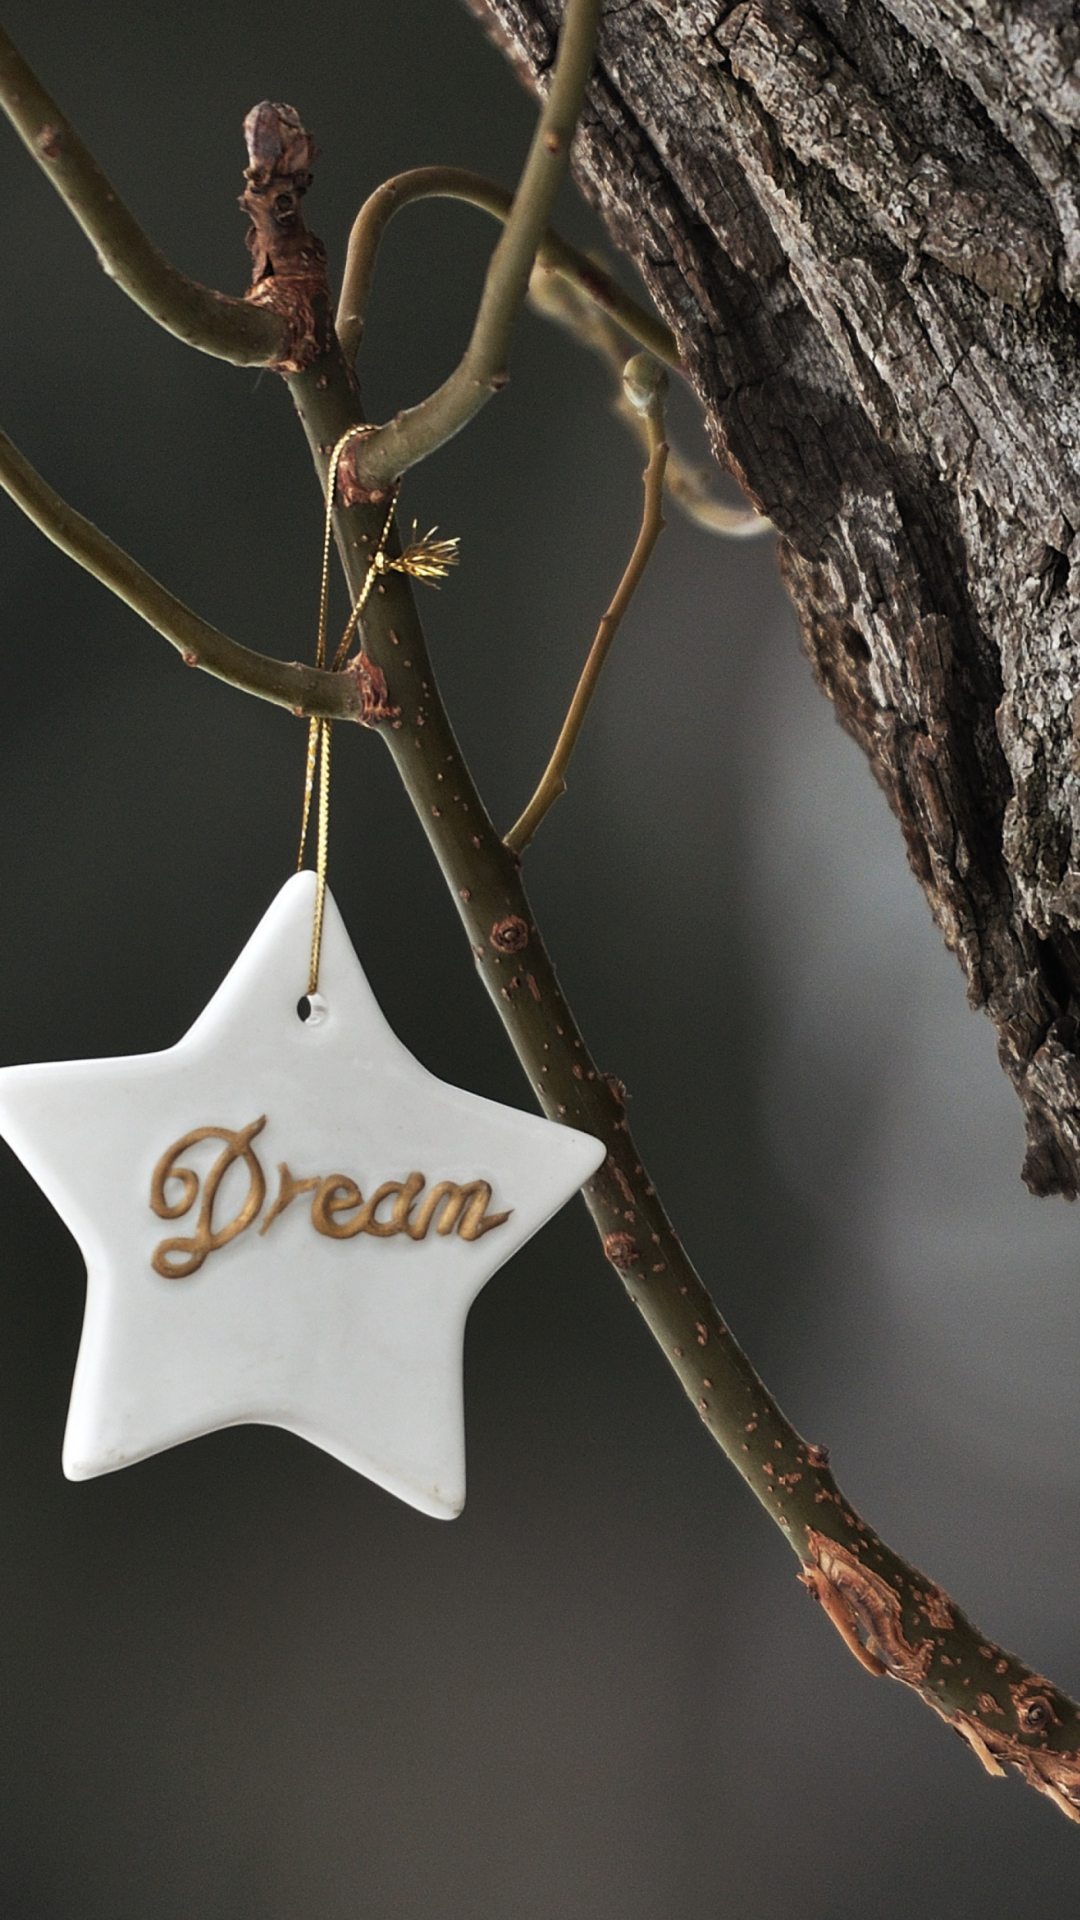 Dream Your Dream wallpaper 1080x1920